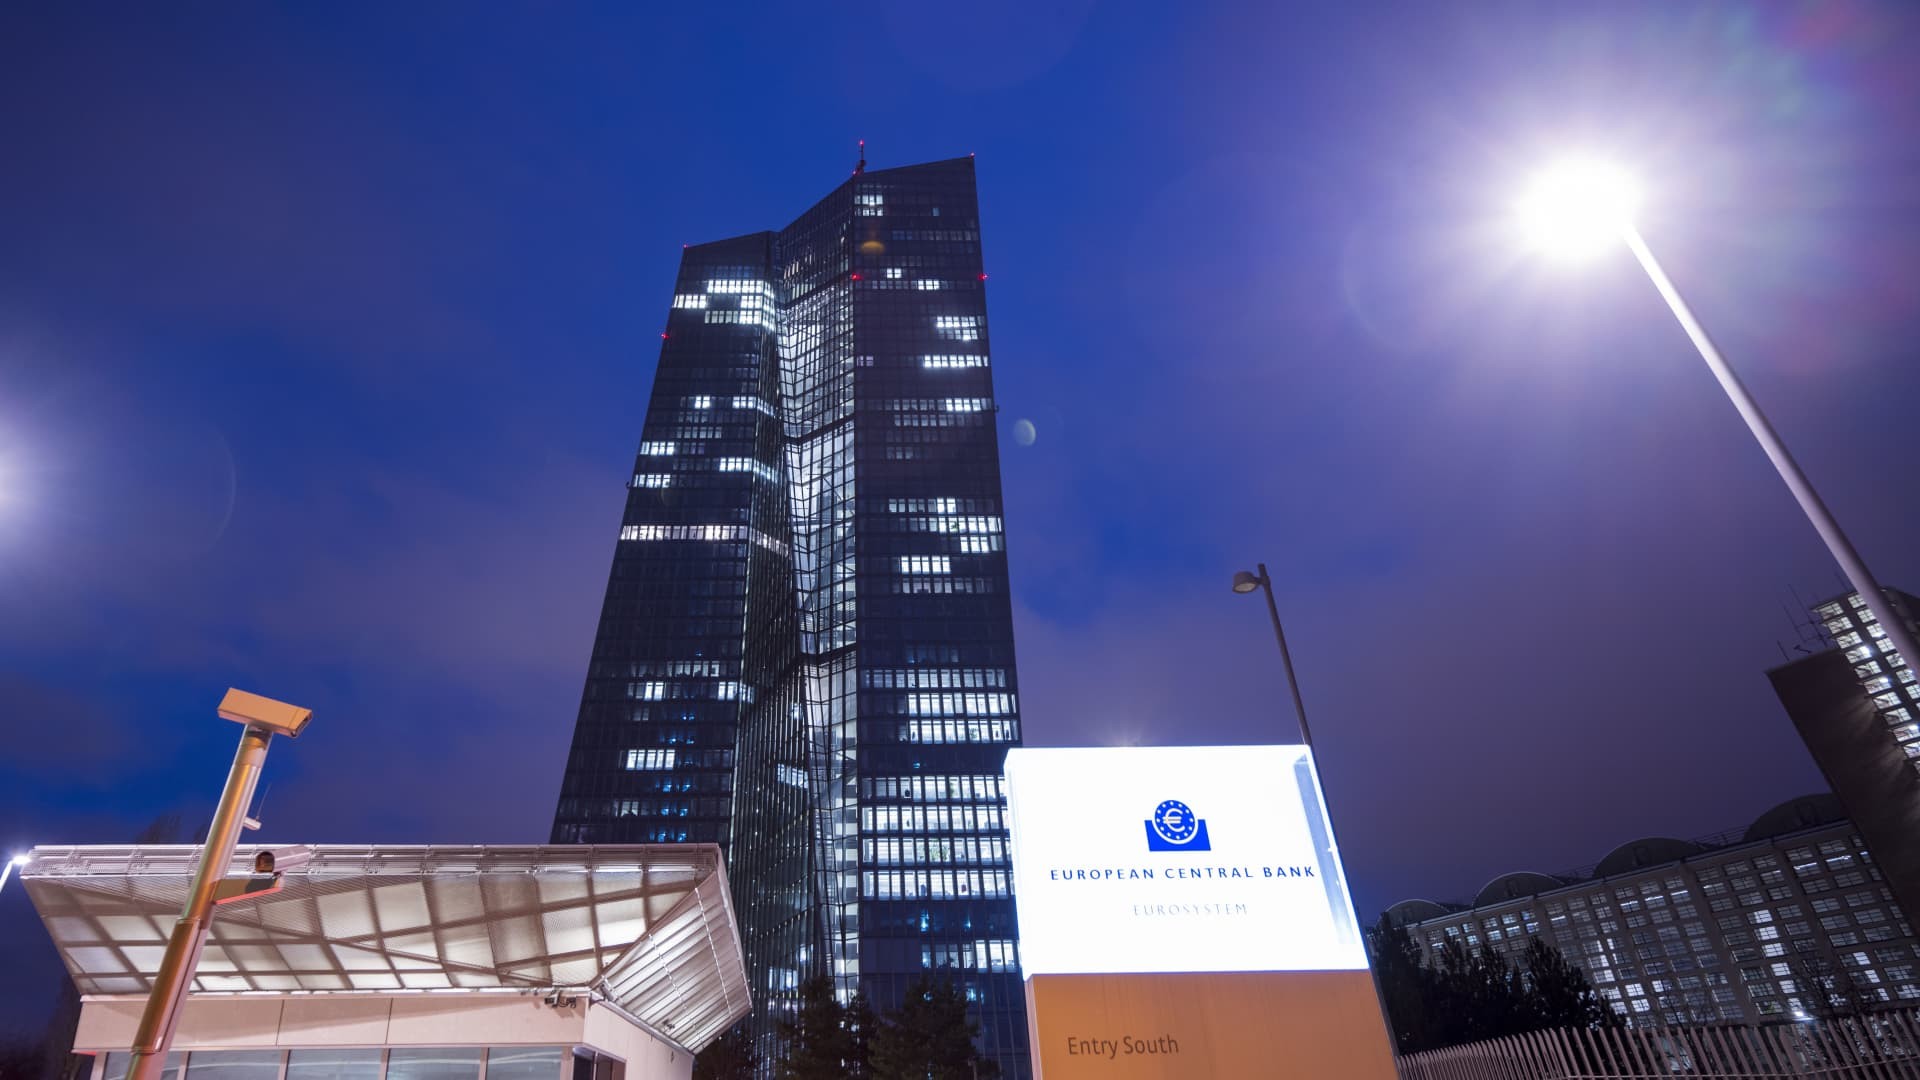 Trụ sở của Ngân hàng Trung ương Châu Âu (ECB) được chụp vào ngày 03 tháng 2 năm 2022 tại Frankfurt, Đức.